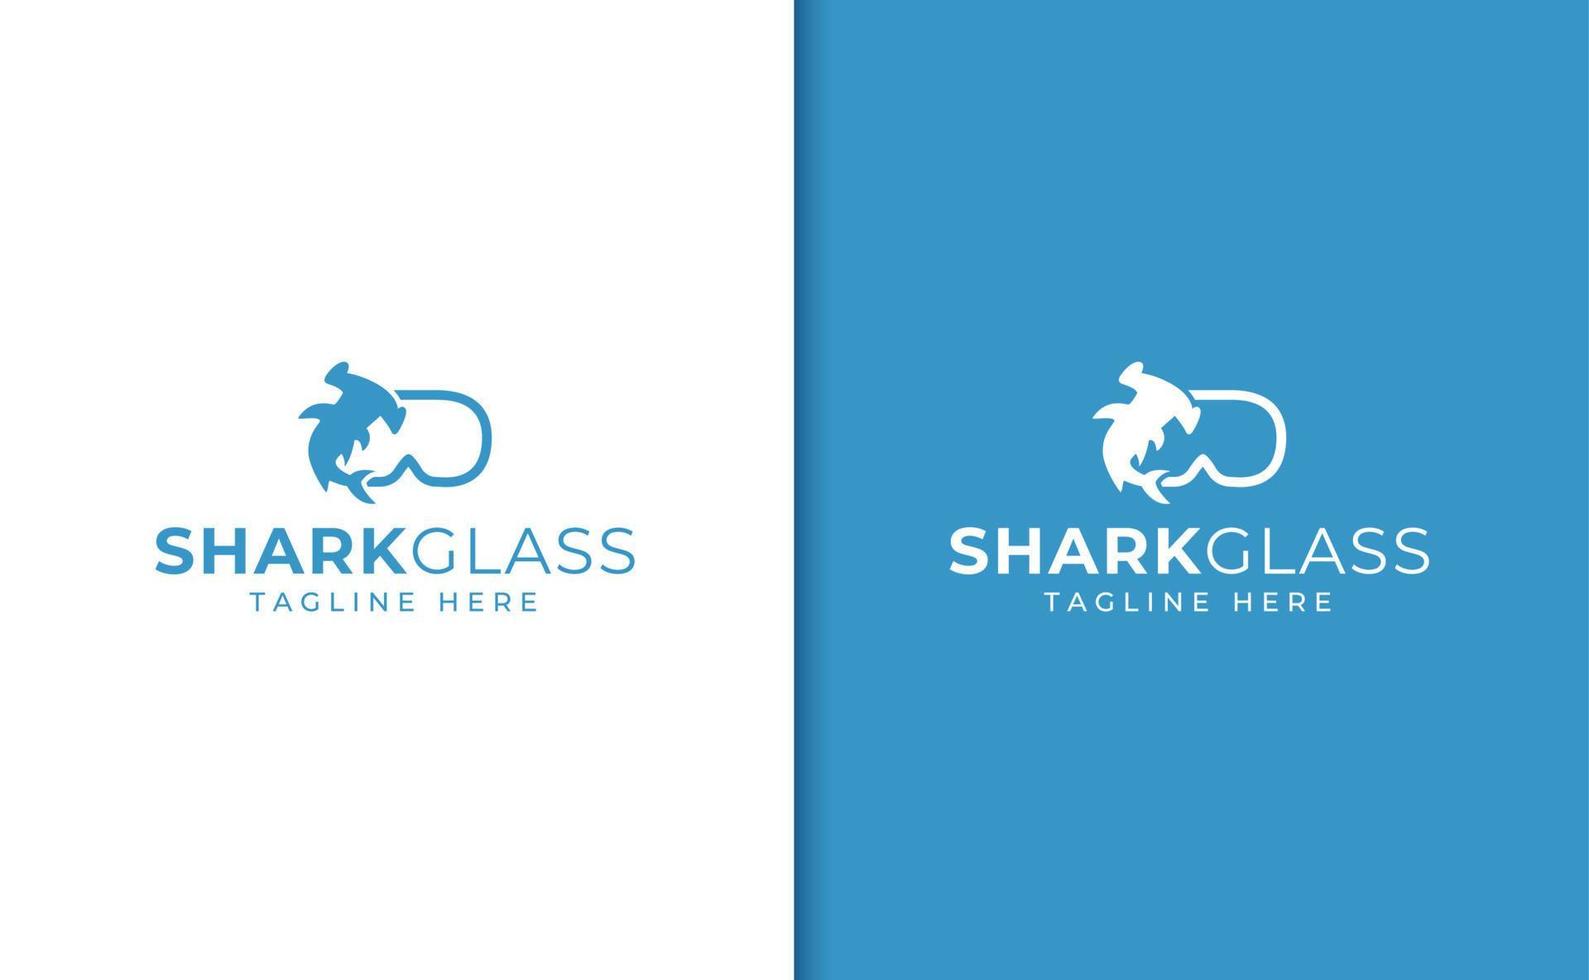 Hammerhead shark glasses logo vector